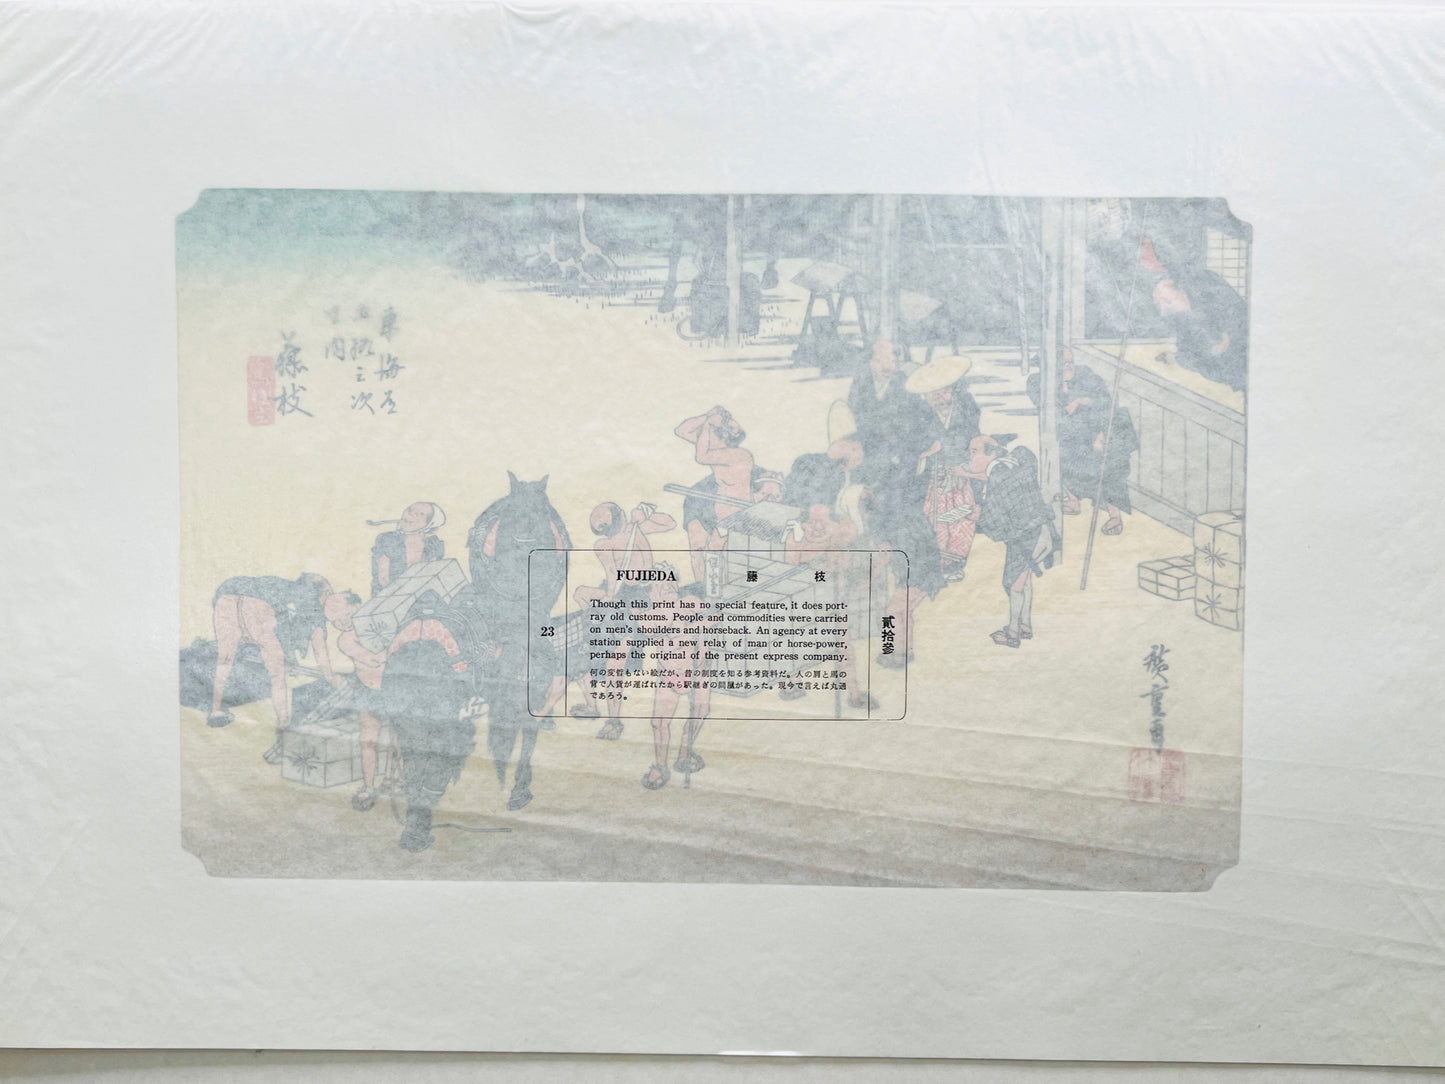 estampe japonaise de Hiroshige, des porteurs posent bagages pour se reposer à la station Fujida du Tokaido, le texte sur le papier cristal de protection